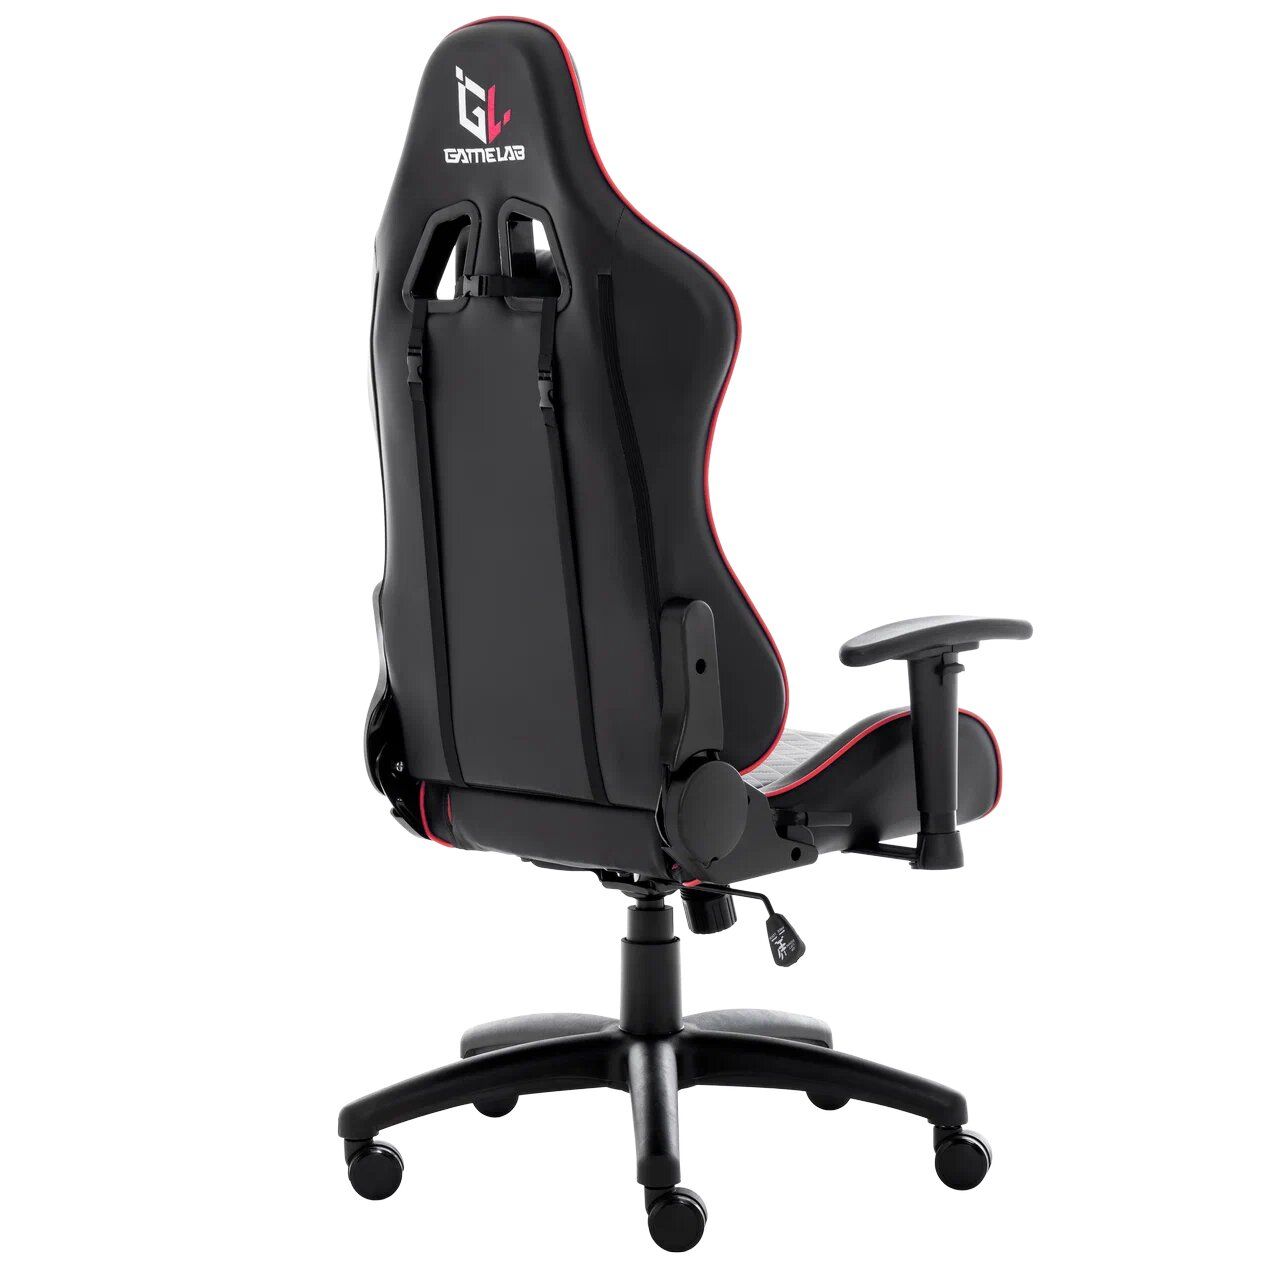 Кресло игровое GameLab Paladin Black  [GL-710] красный